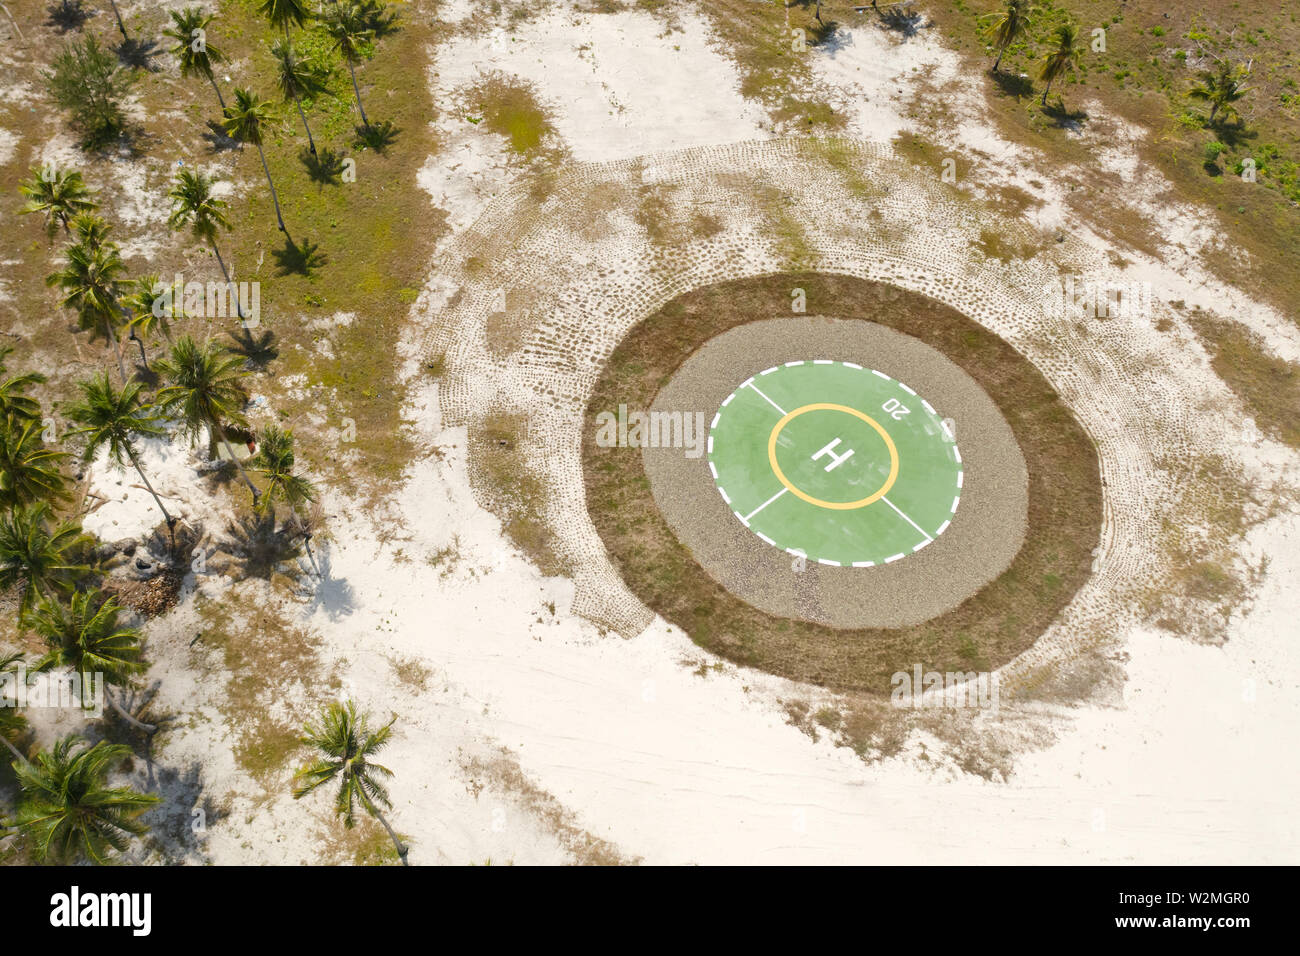 Hubschrauberlandeplatz auf einer tropischen Insel. Balabac, Palawan, Philippinen. Hubschrauberlandeplatz unter Palmen auf einer tropischen Insel, Ansicht von oben. Stockfoto